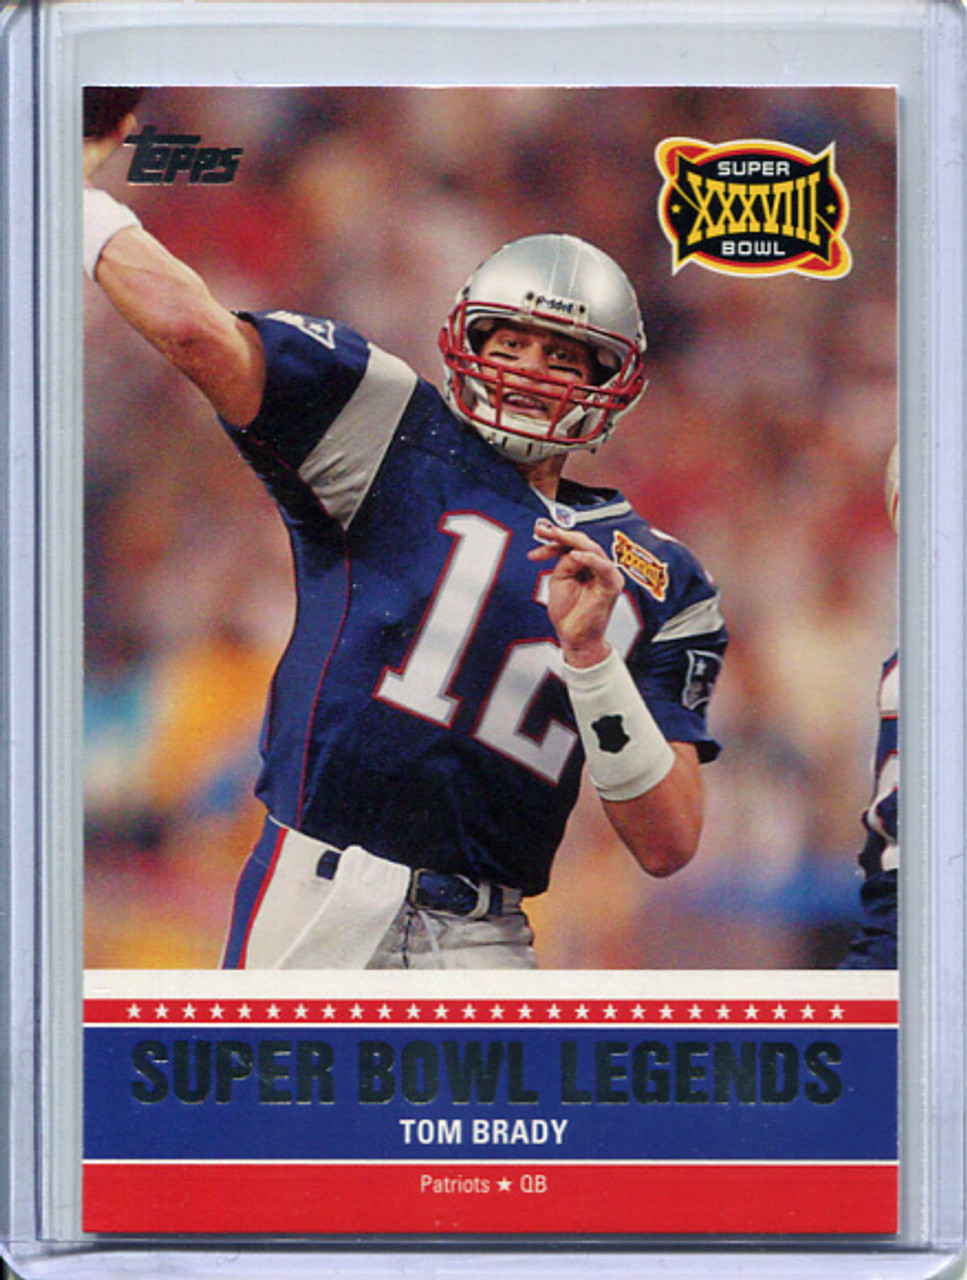 Tom Brady 2011 Topps, Super Bowl Legends #SBL-XXXVIII